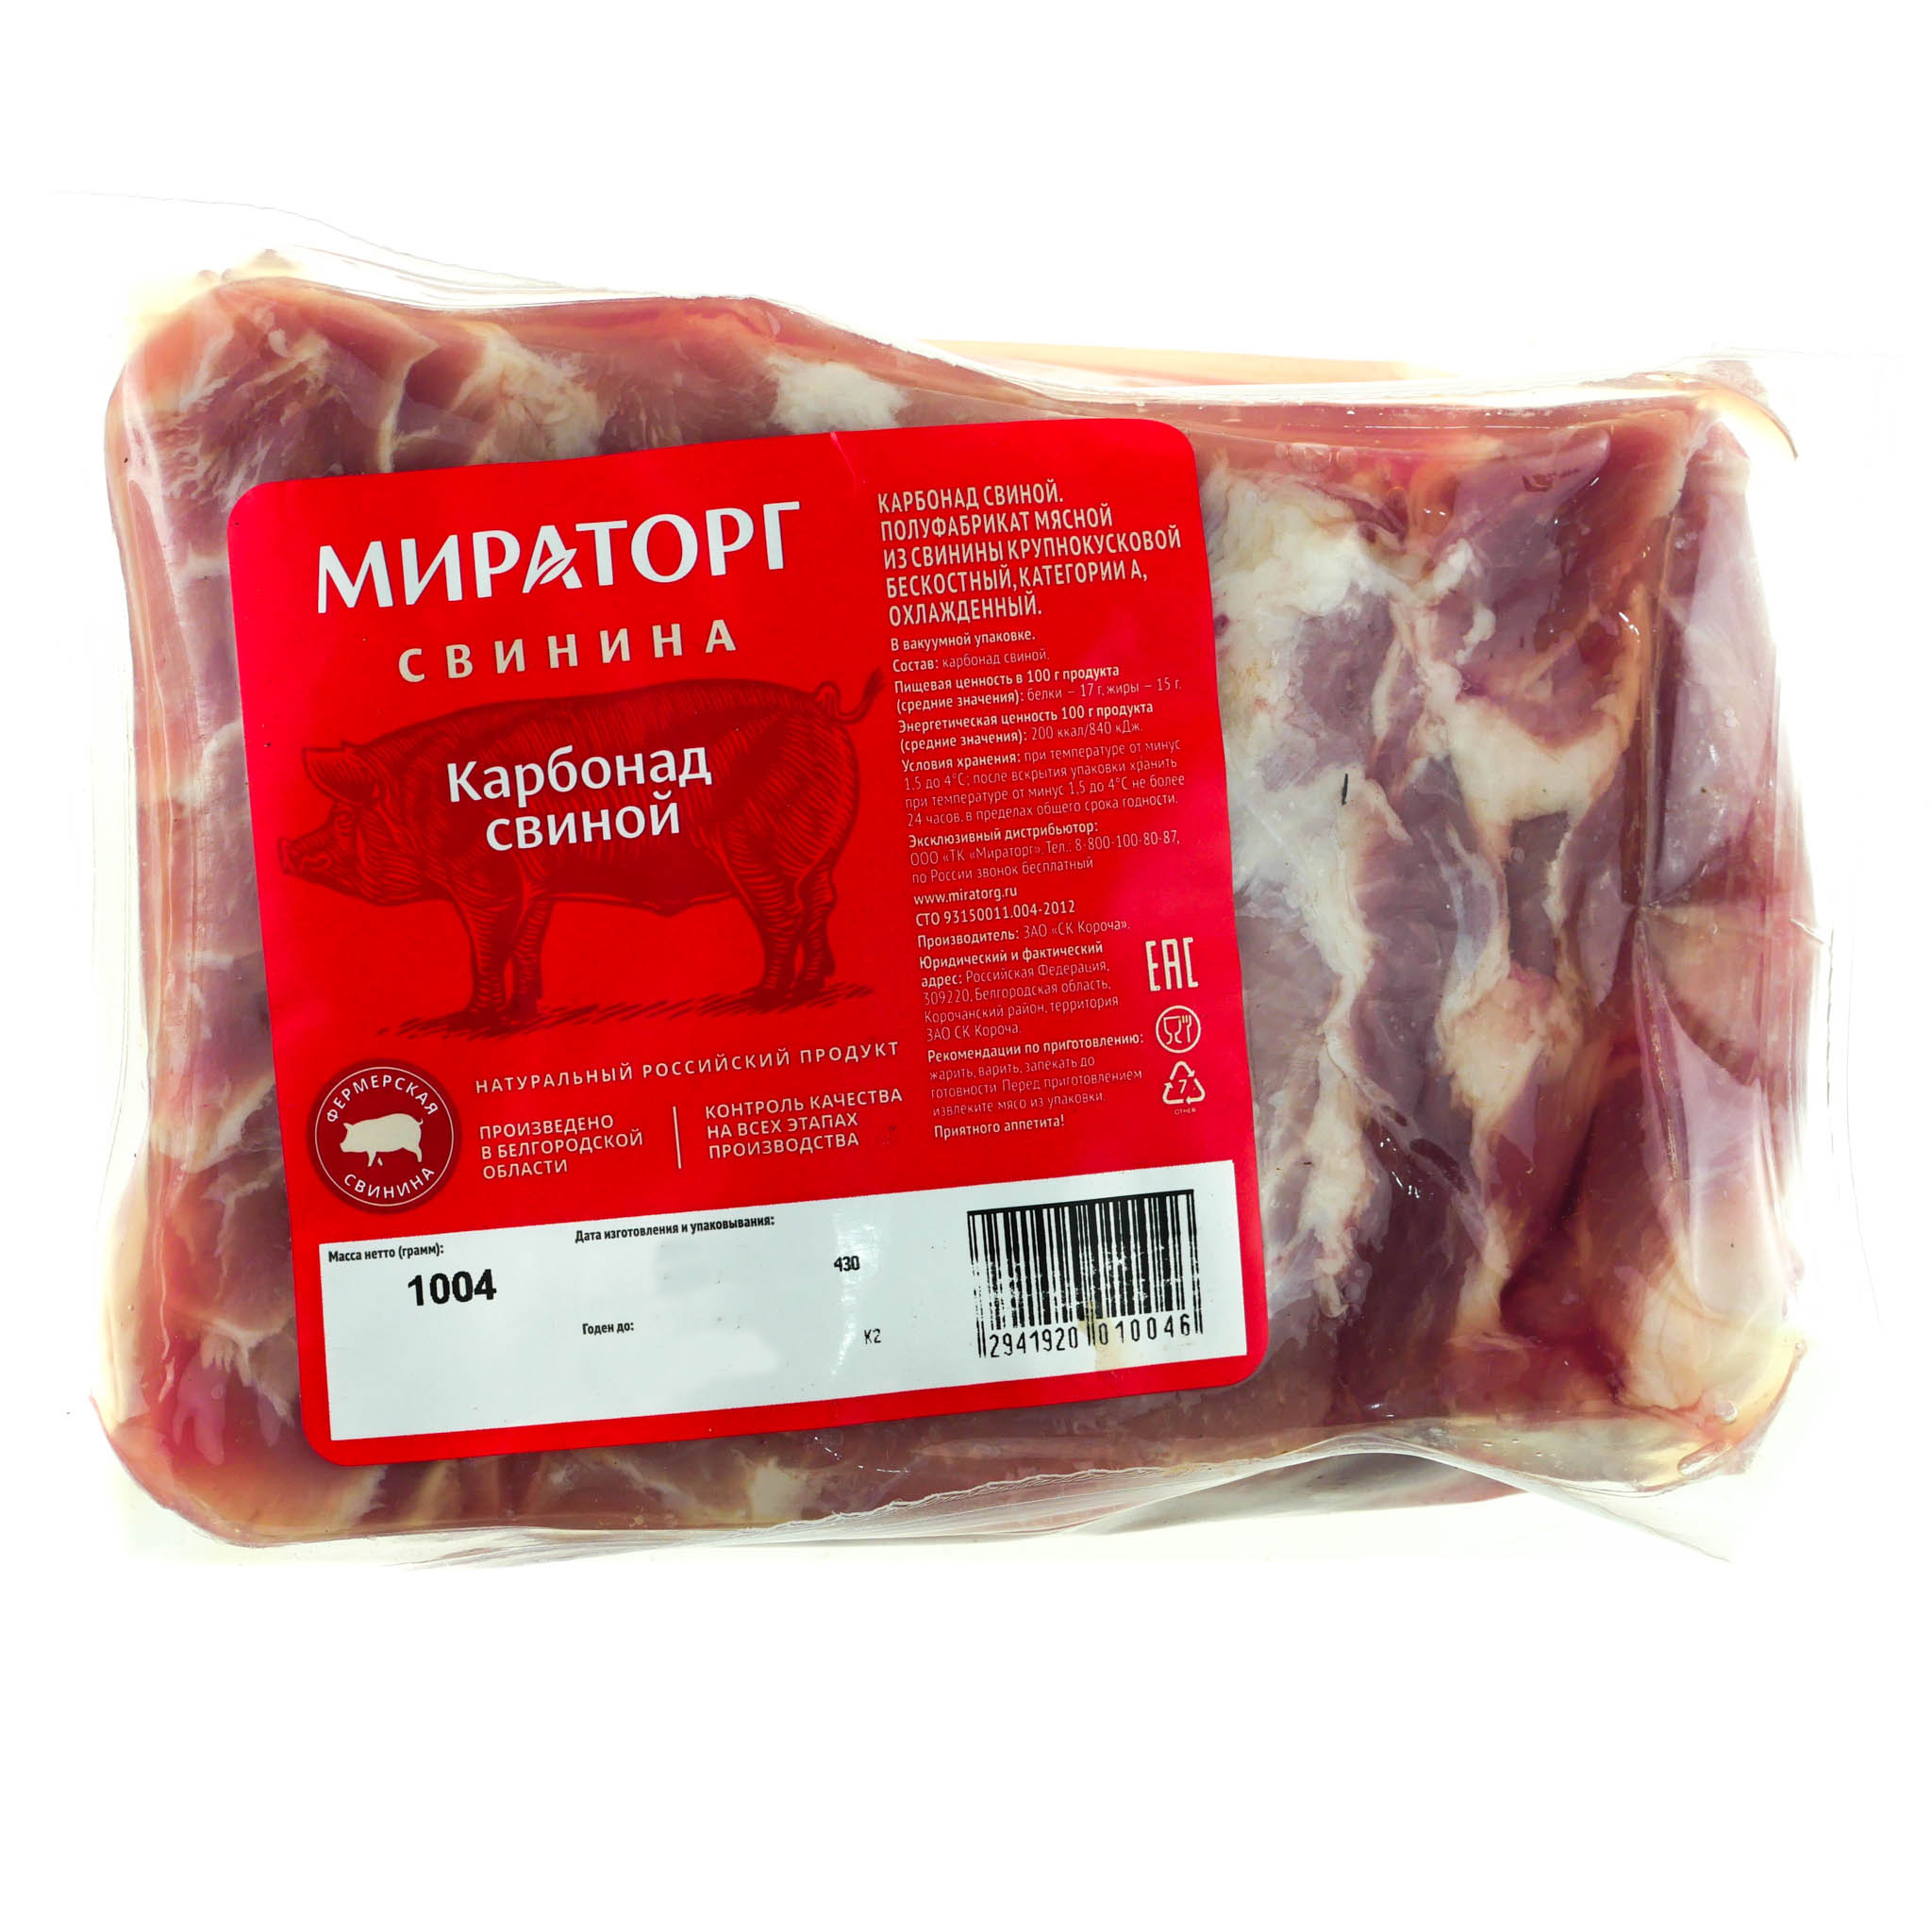 Карбонат свиной Мираторг